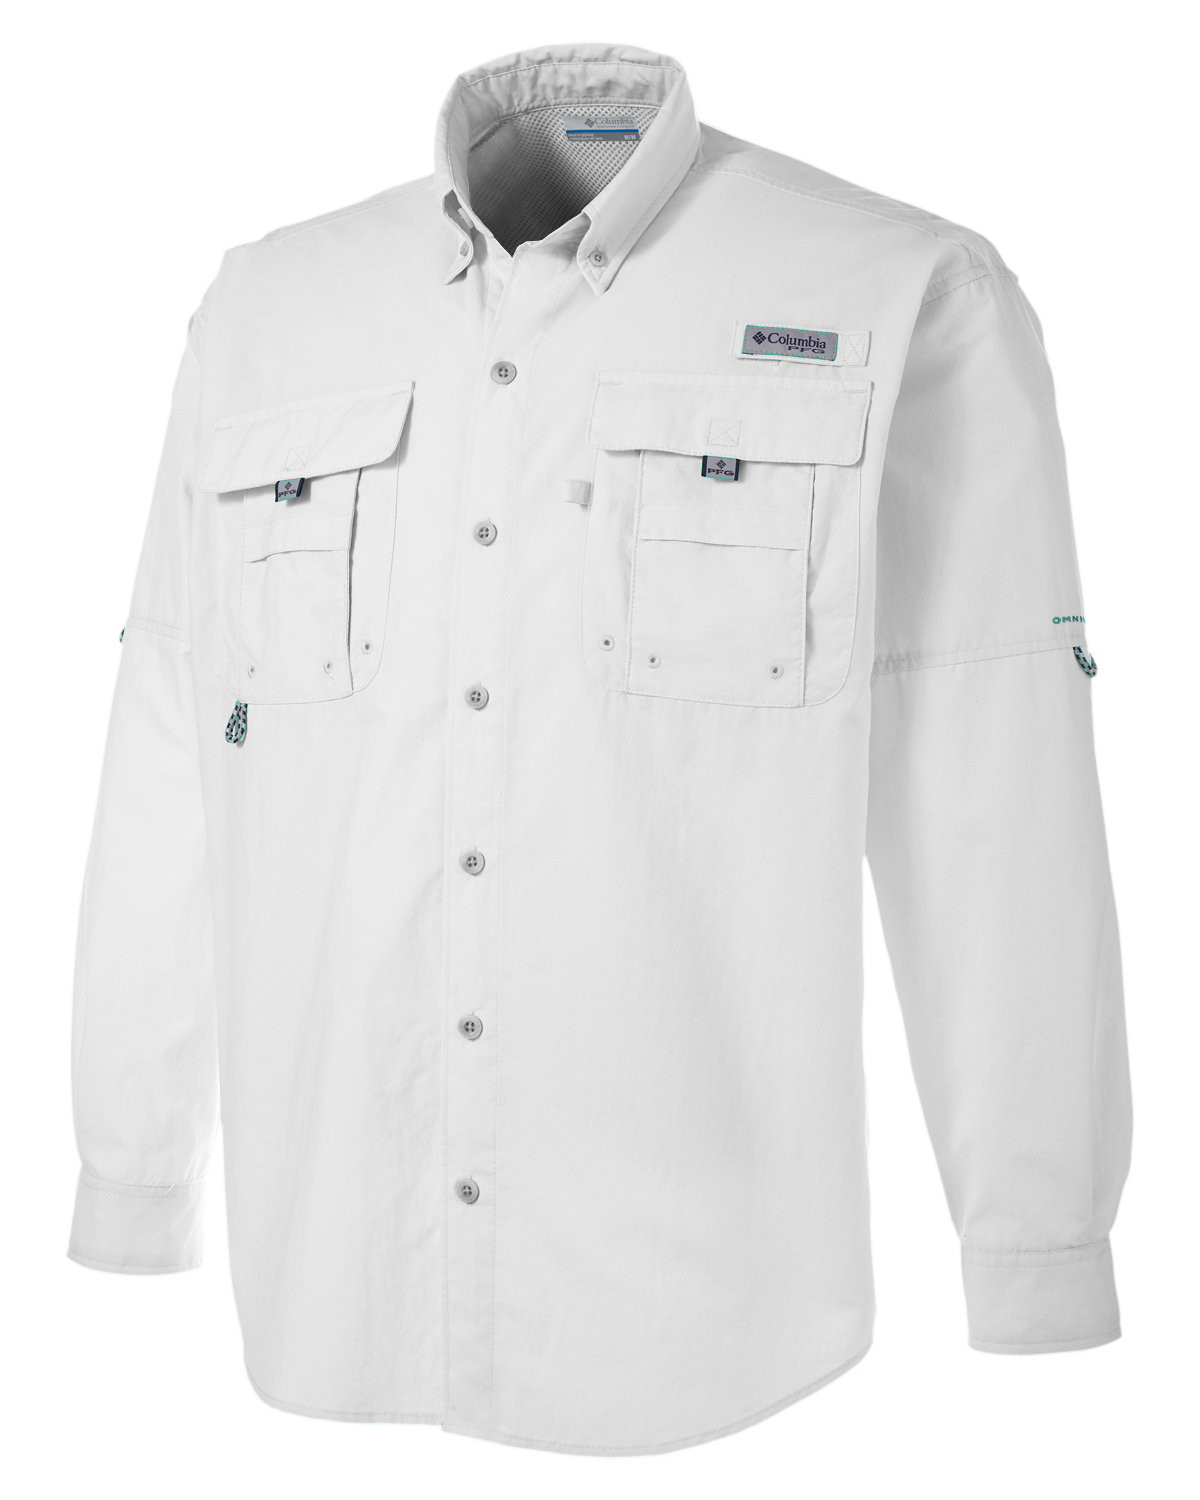 Columbia Men's PFG Bahama II Short Sleeve Shirt, Black, 3X/Tall